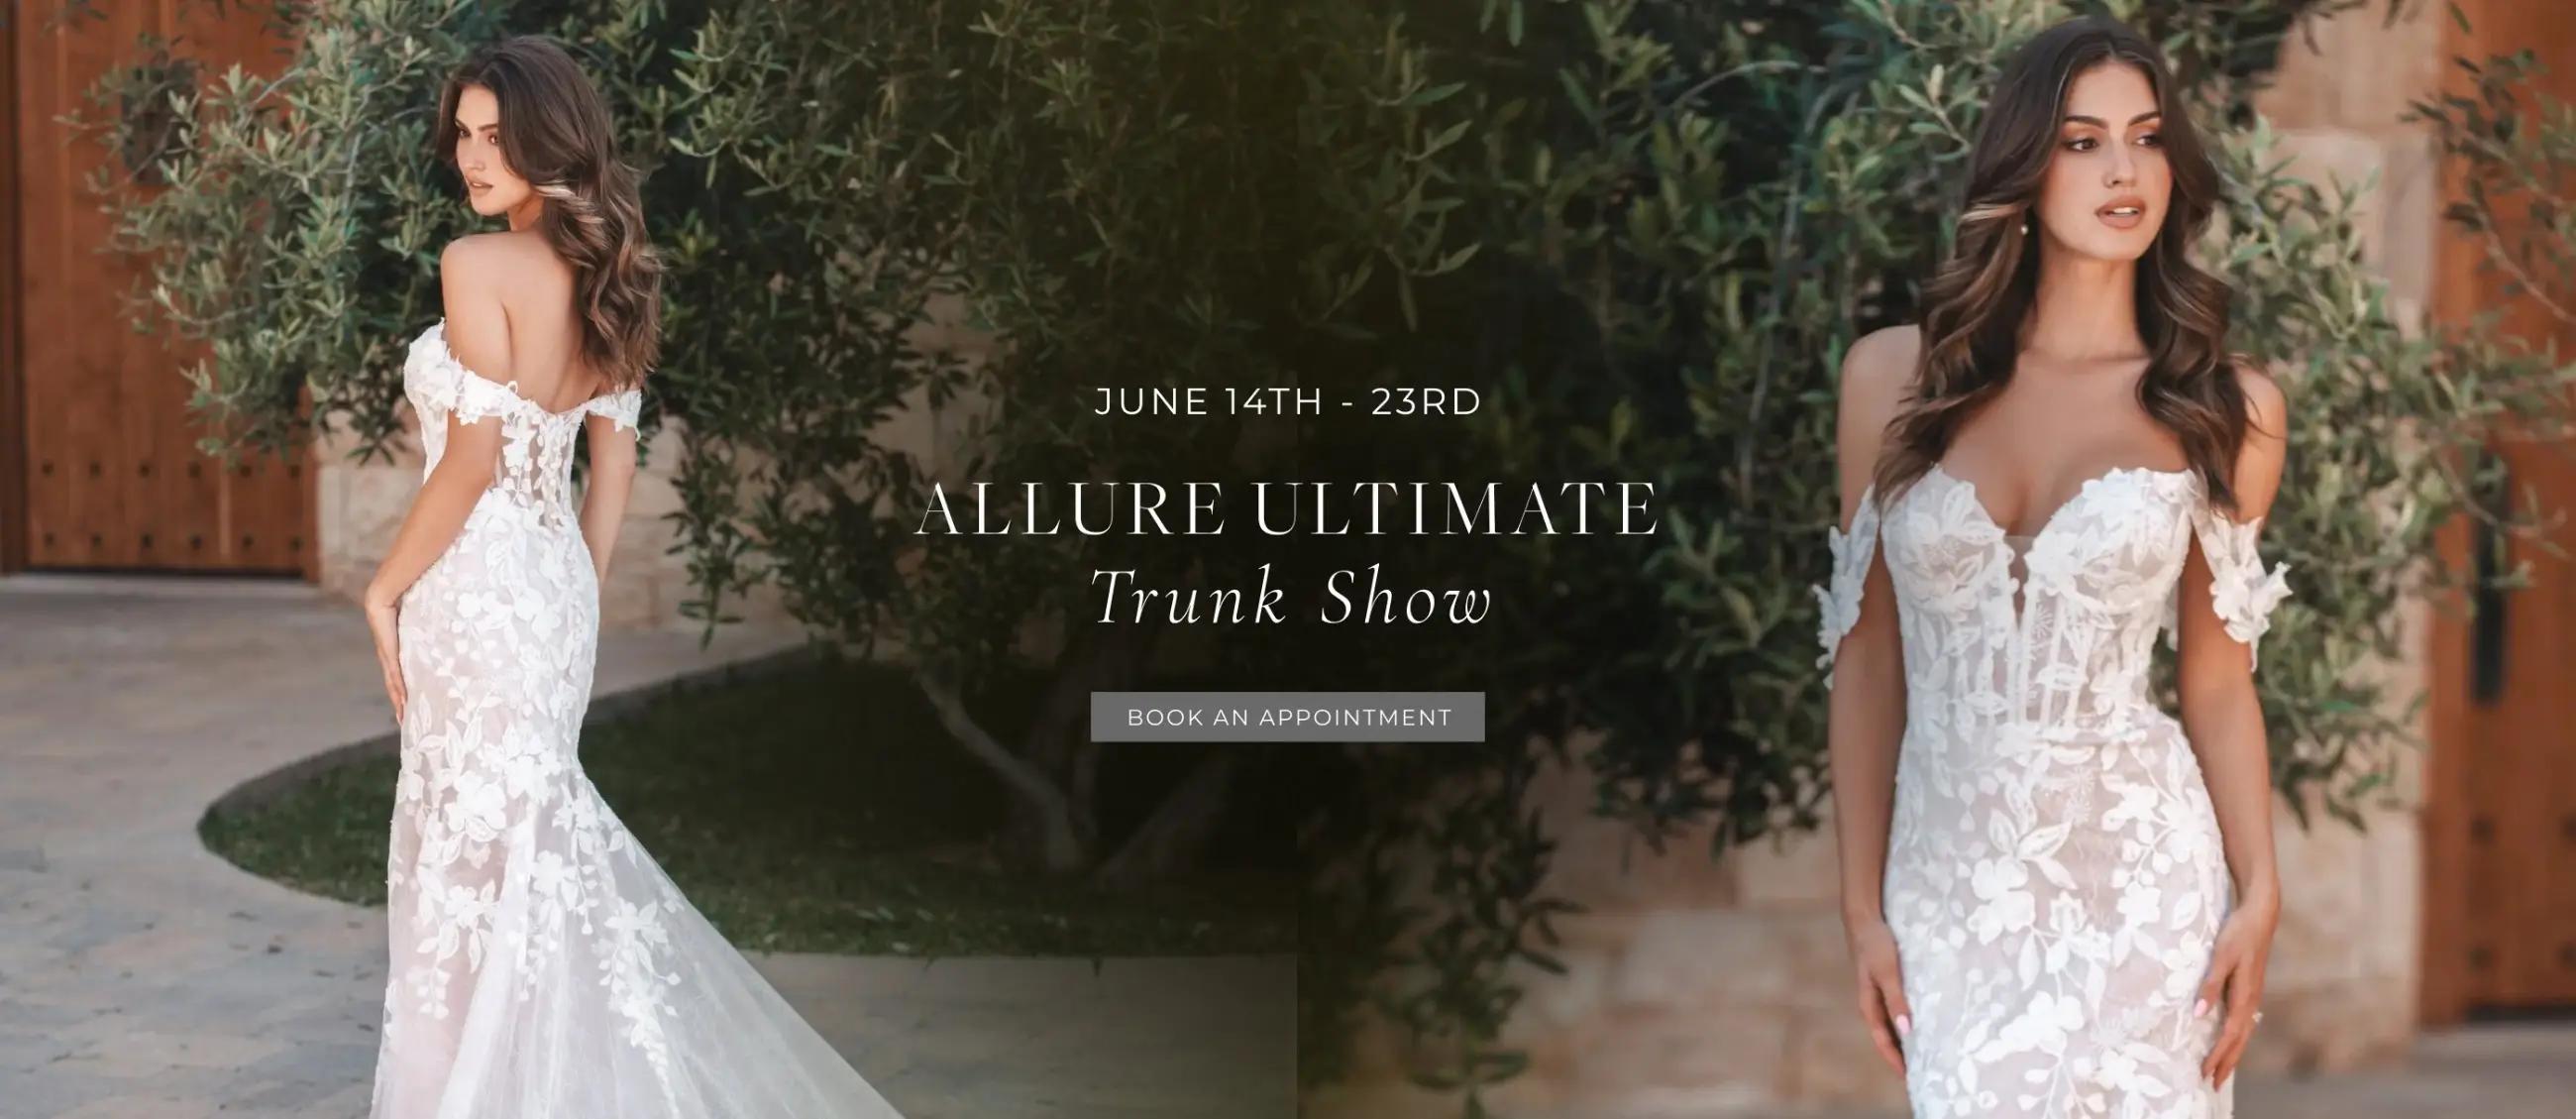 Allure Ultimate Trunk Show Desktop Banner